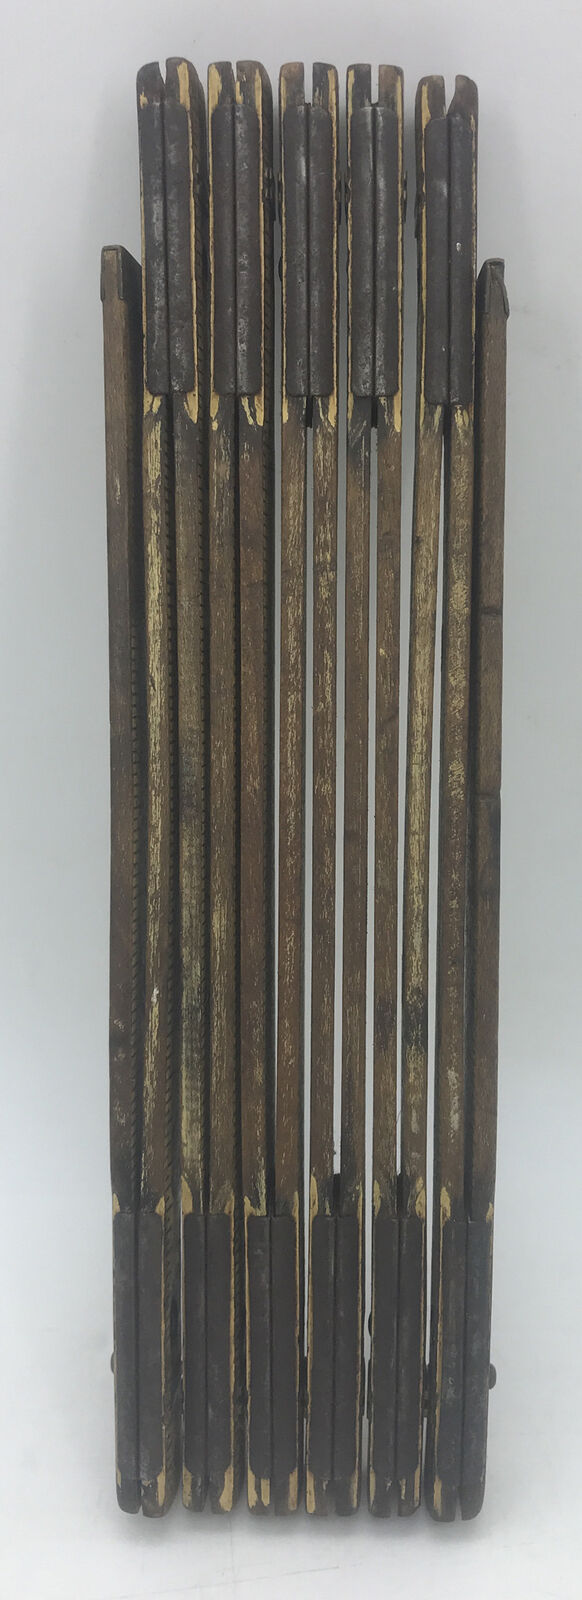 Vintage Folding Yardstick - Wood - 2 Yards - 72\